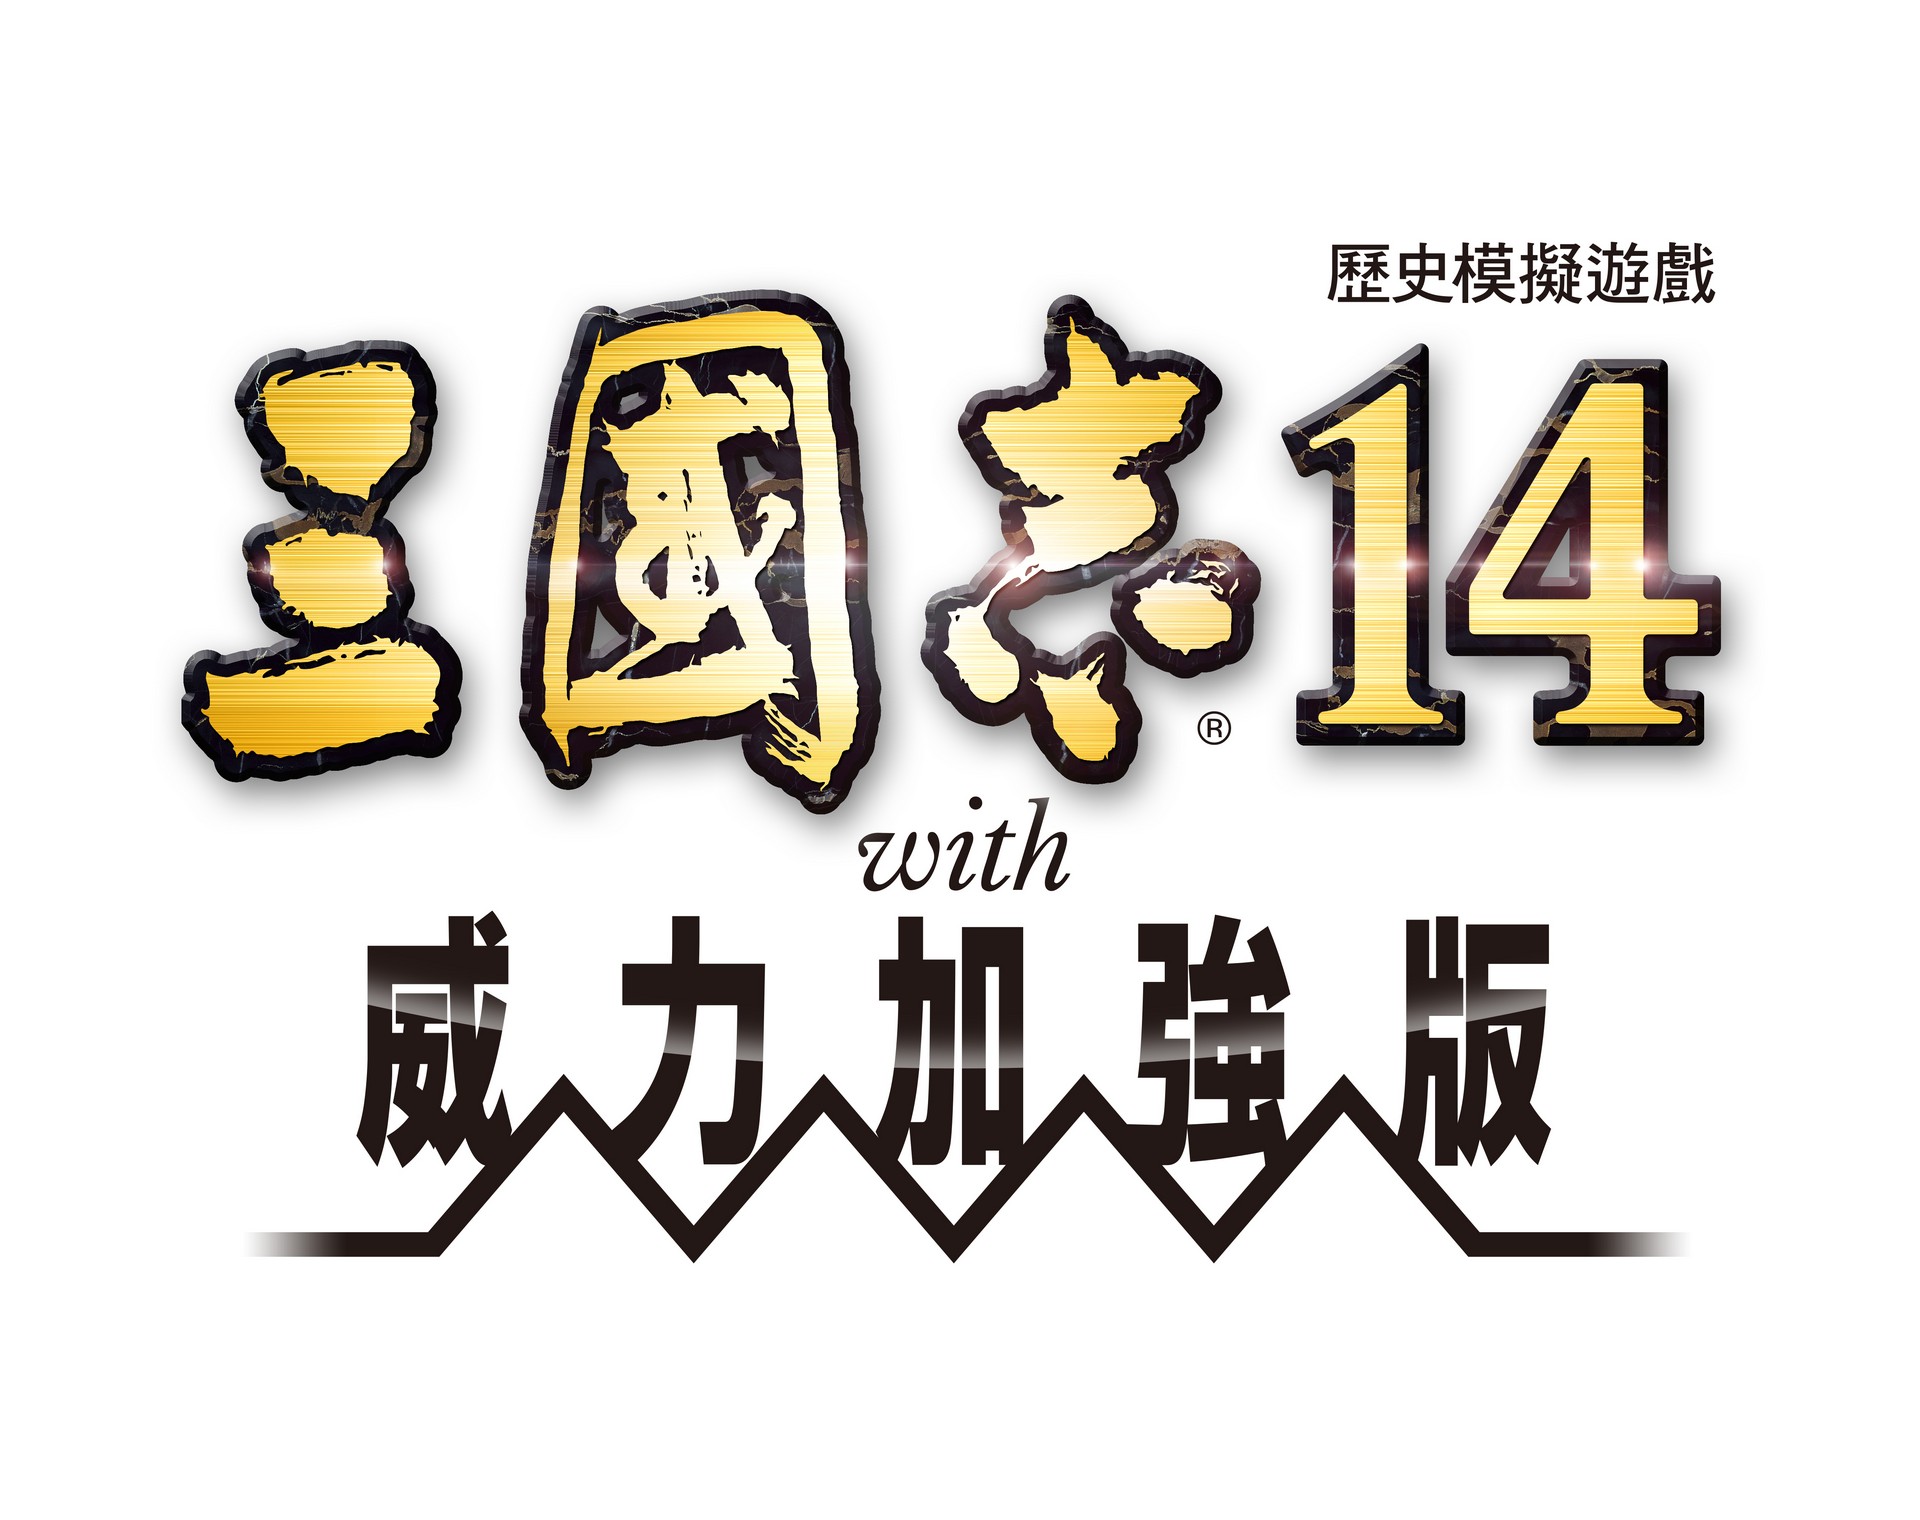 『三国志 14 with  威力加强版』 开始发布 2 月免费更新及付费 DLC！